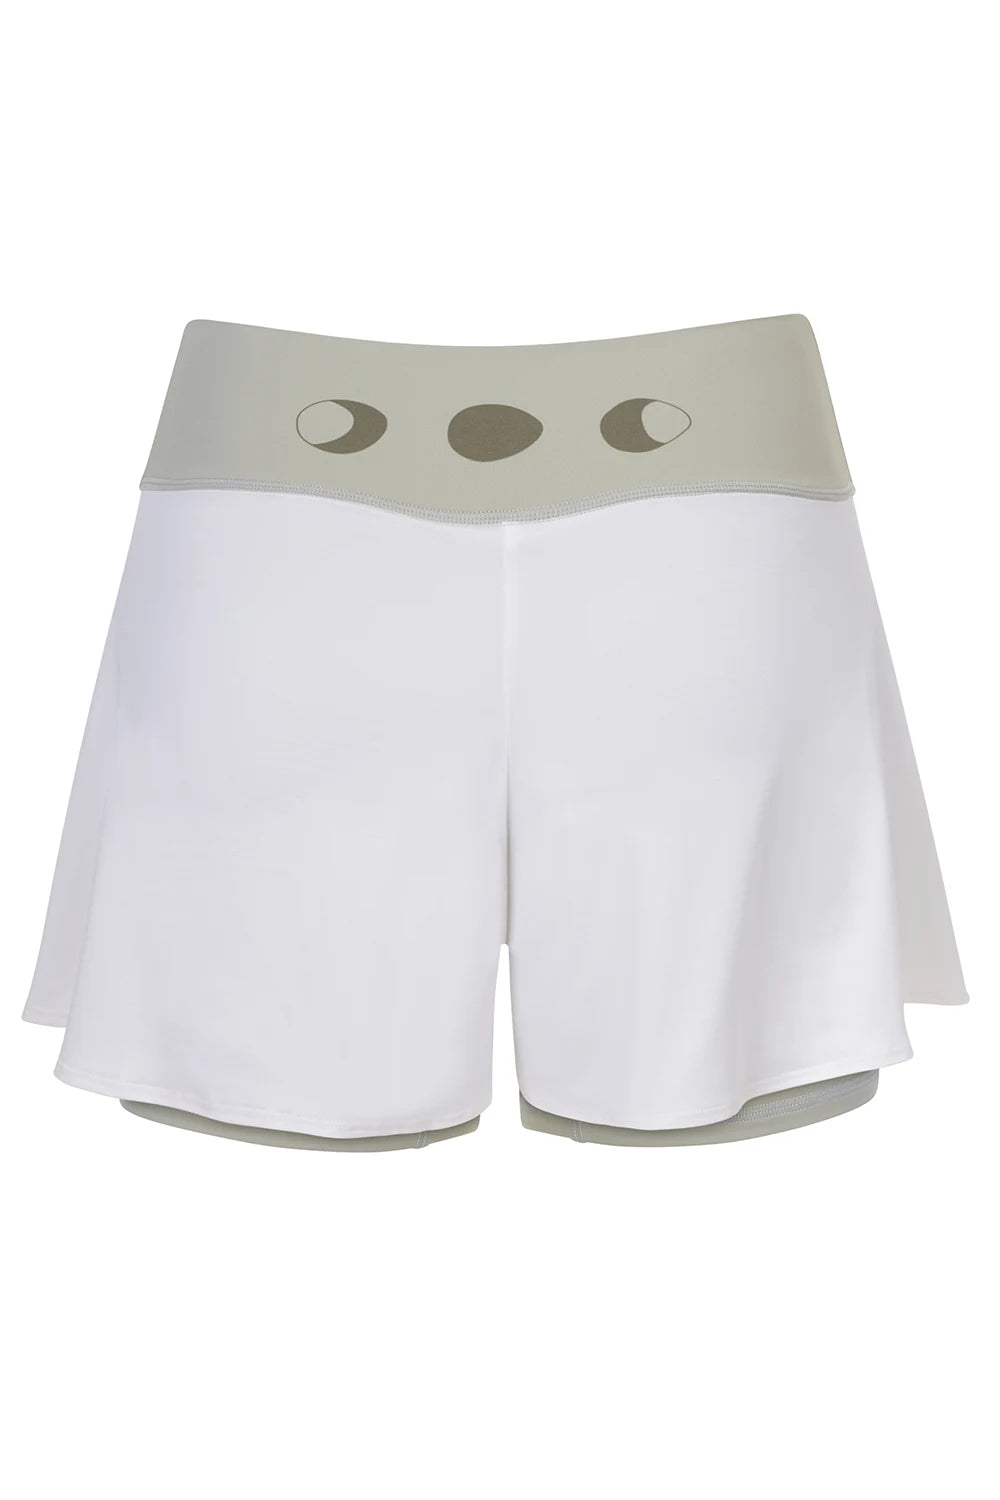 Silueta de Shorts de yoga de Yogimi en color verde con capa blanca. Modelo Prana Laurel Green-White